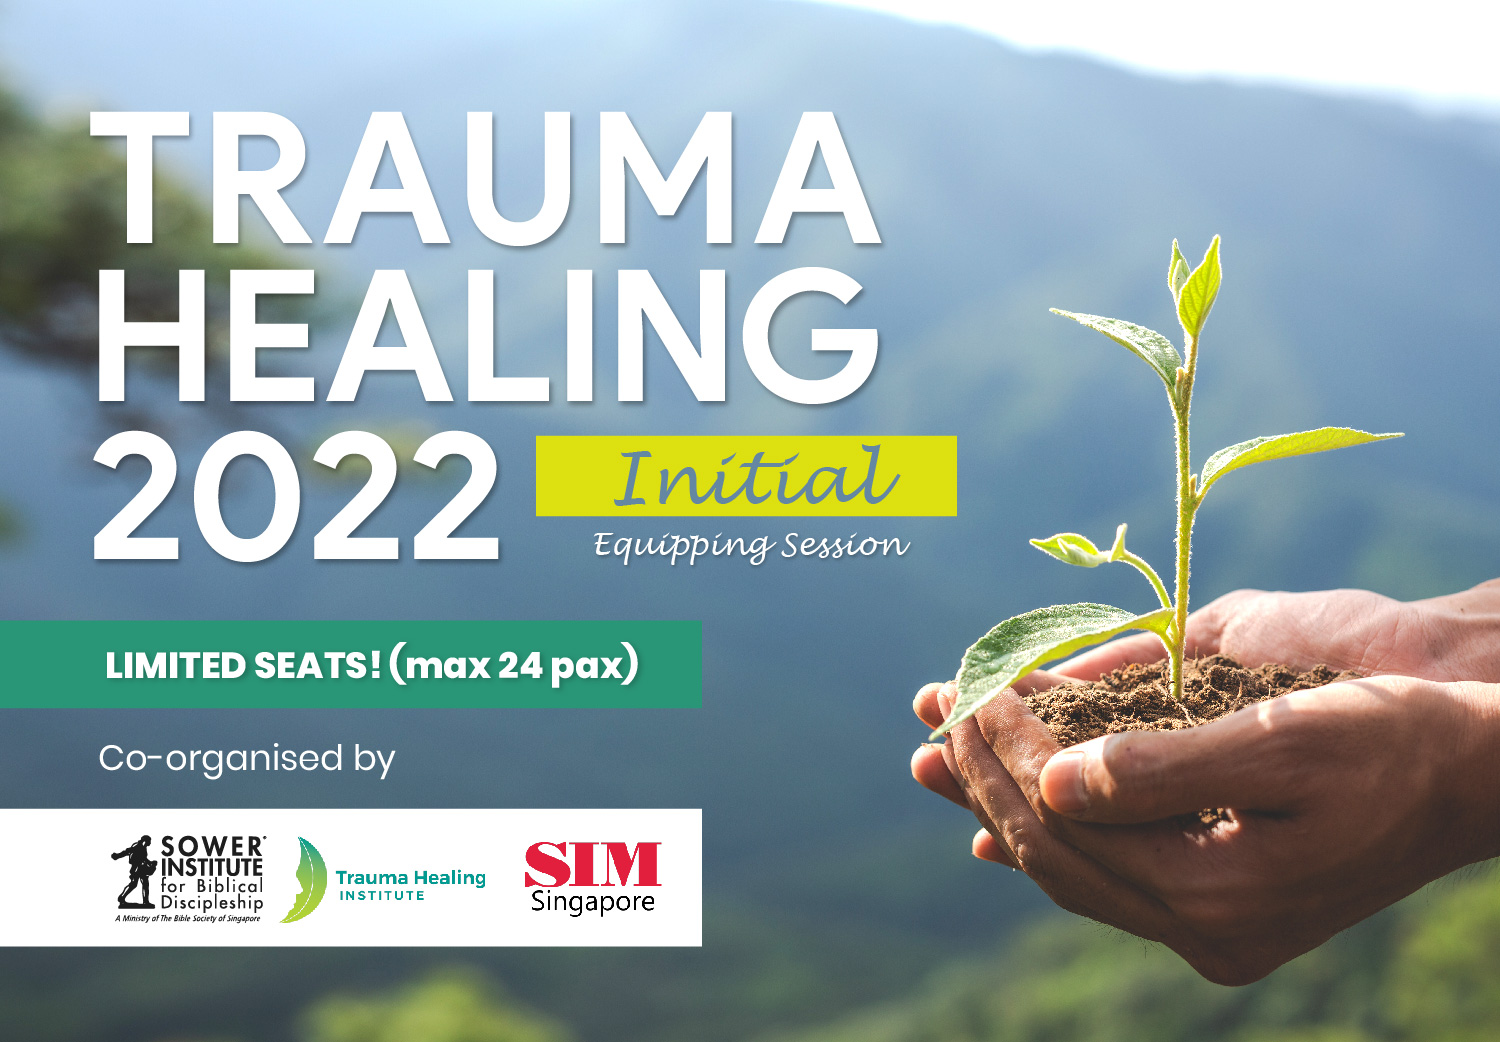 Trauma Healing - Initial Equipping